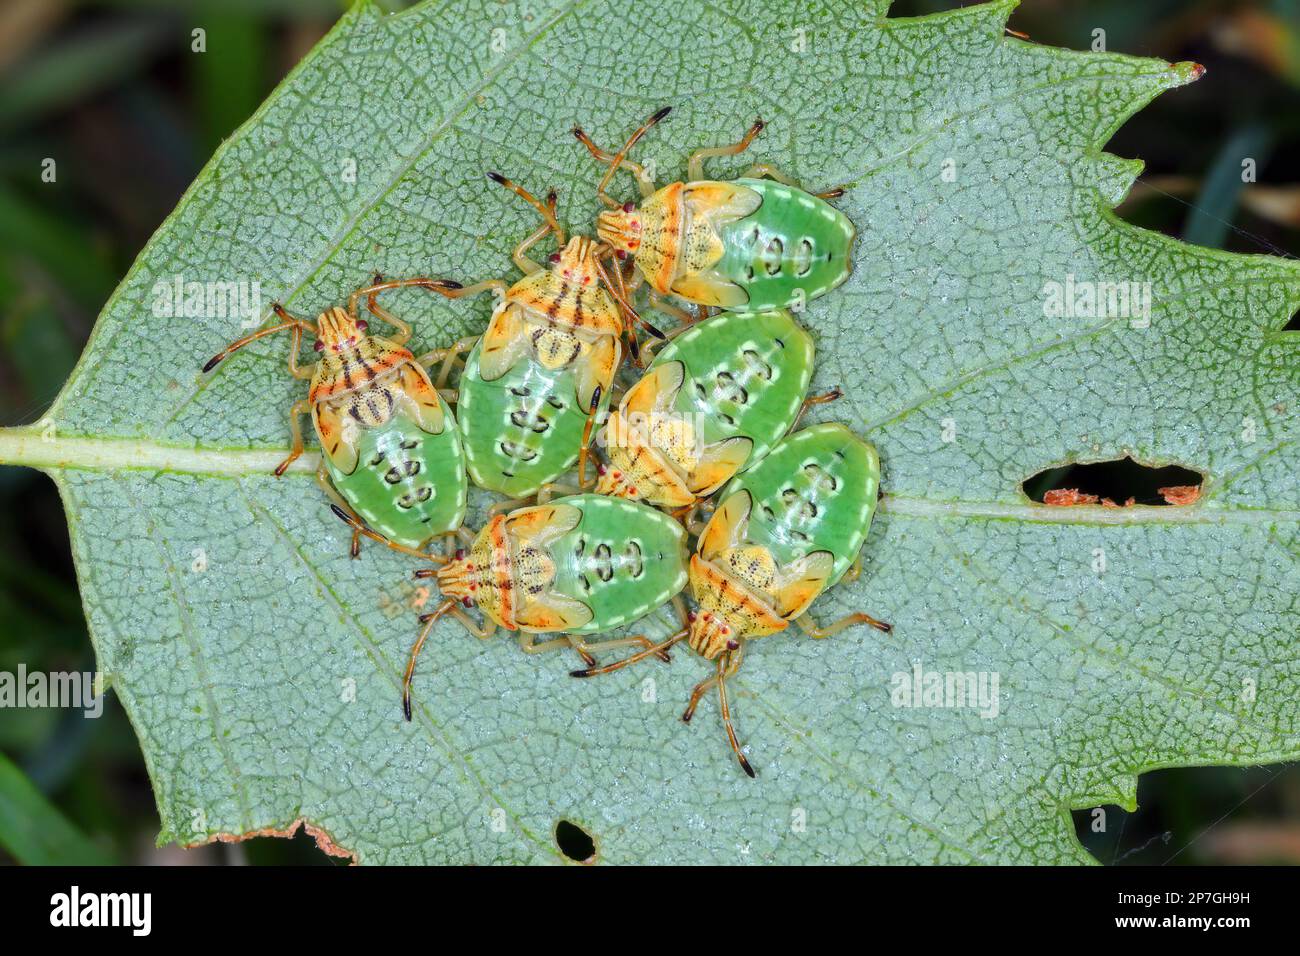 Groupe de parents Nymphes de l'insecte final (Elasmucha grisea) nichés ensemble sur la feuille de bouleau. Banque D'Images